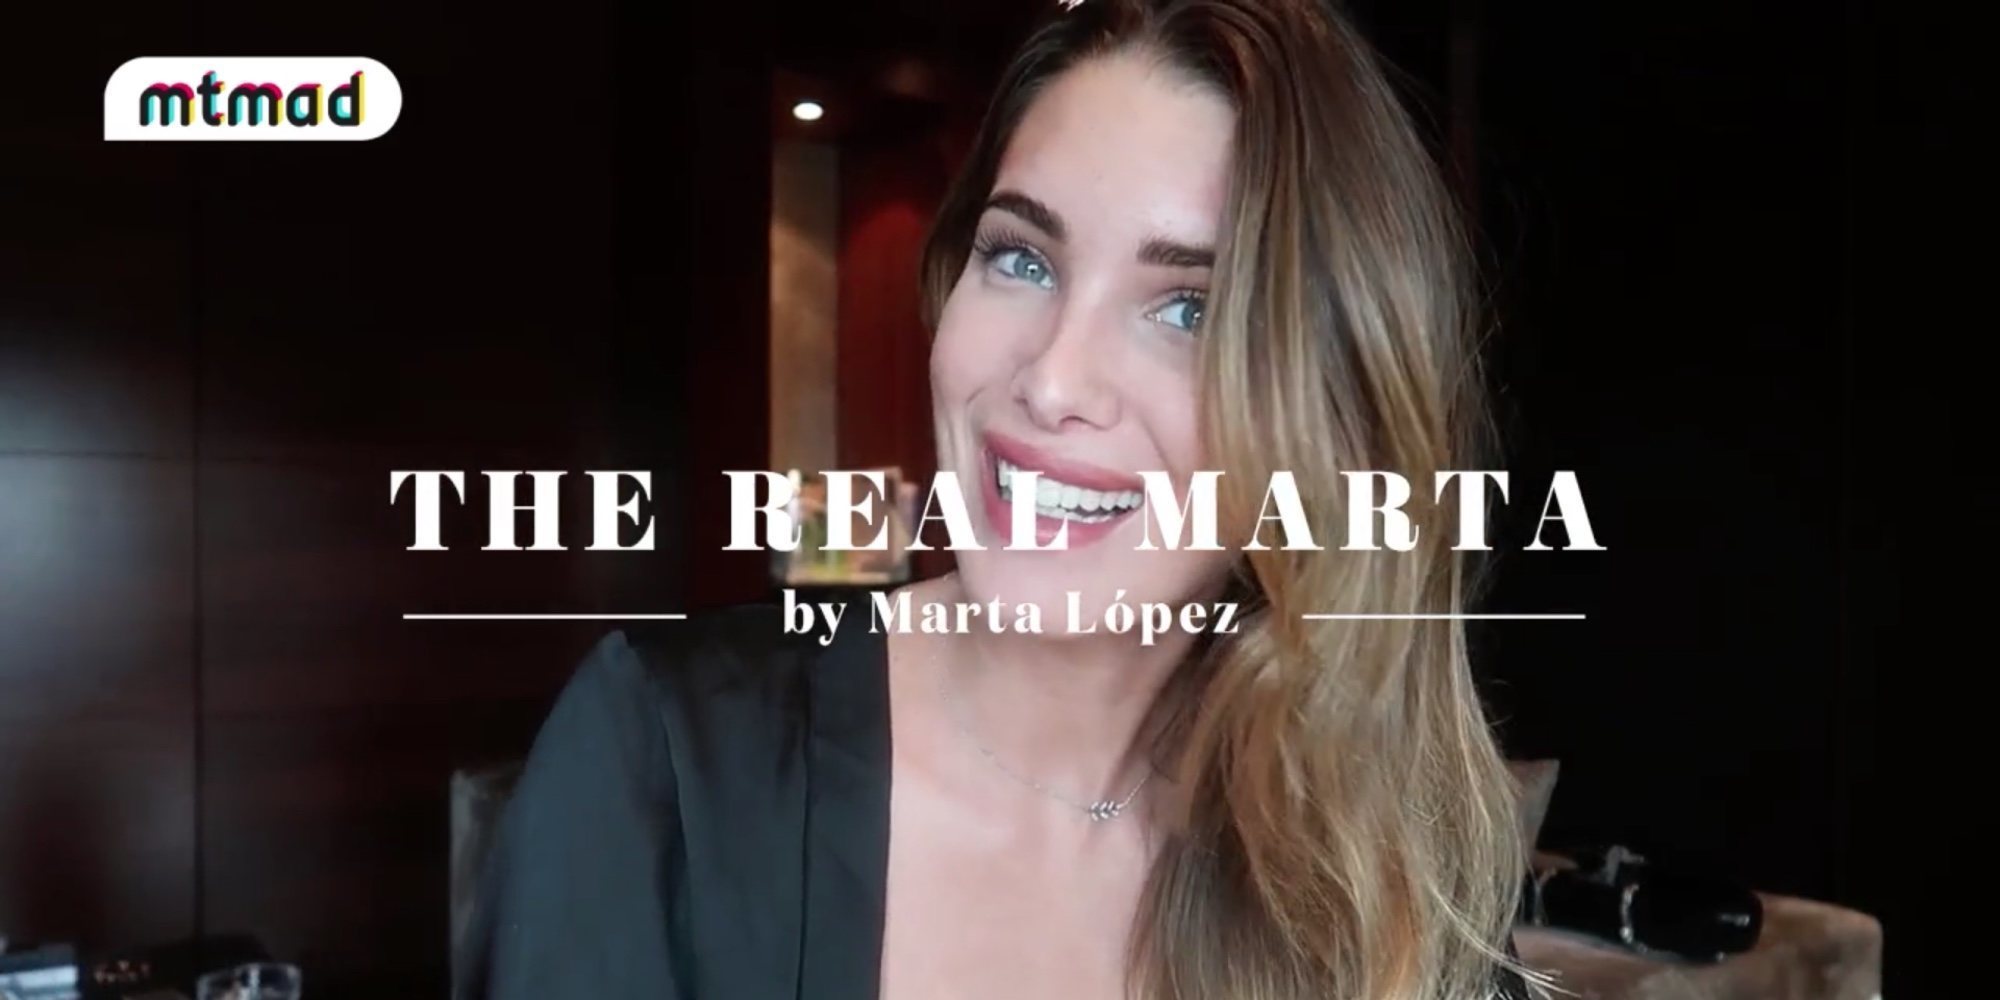 La confesión de Marta López, novia de Kiko Matamoros, en el estreno de su reality en Mtmad